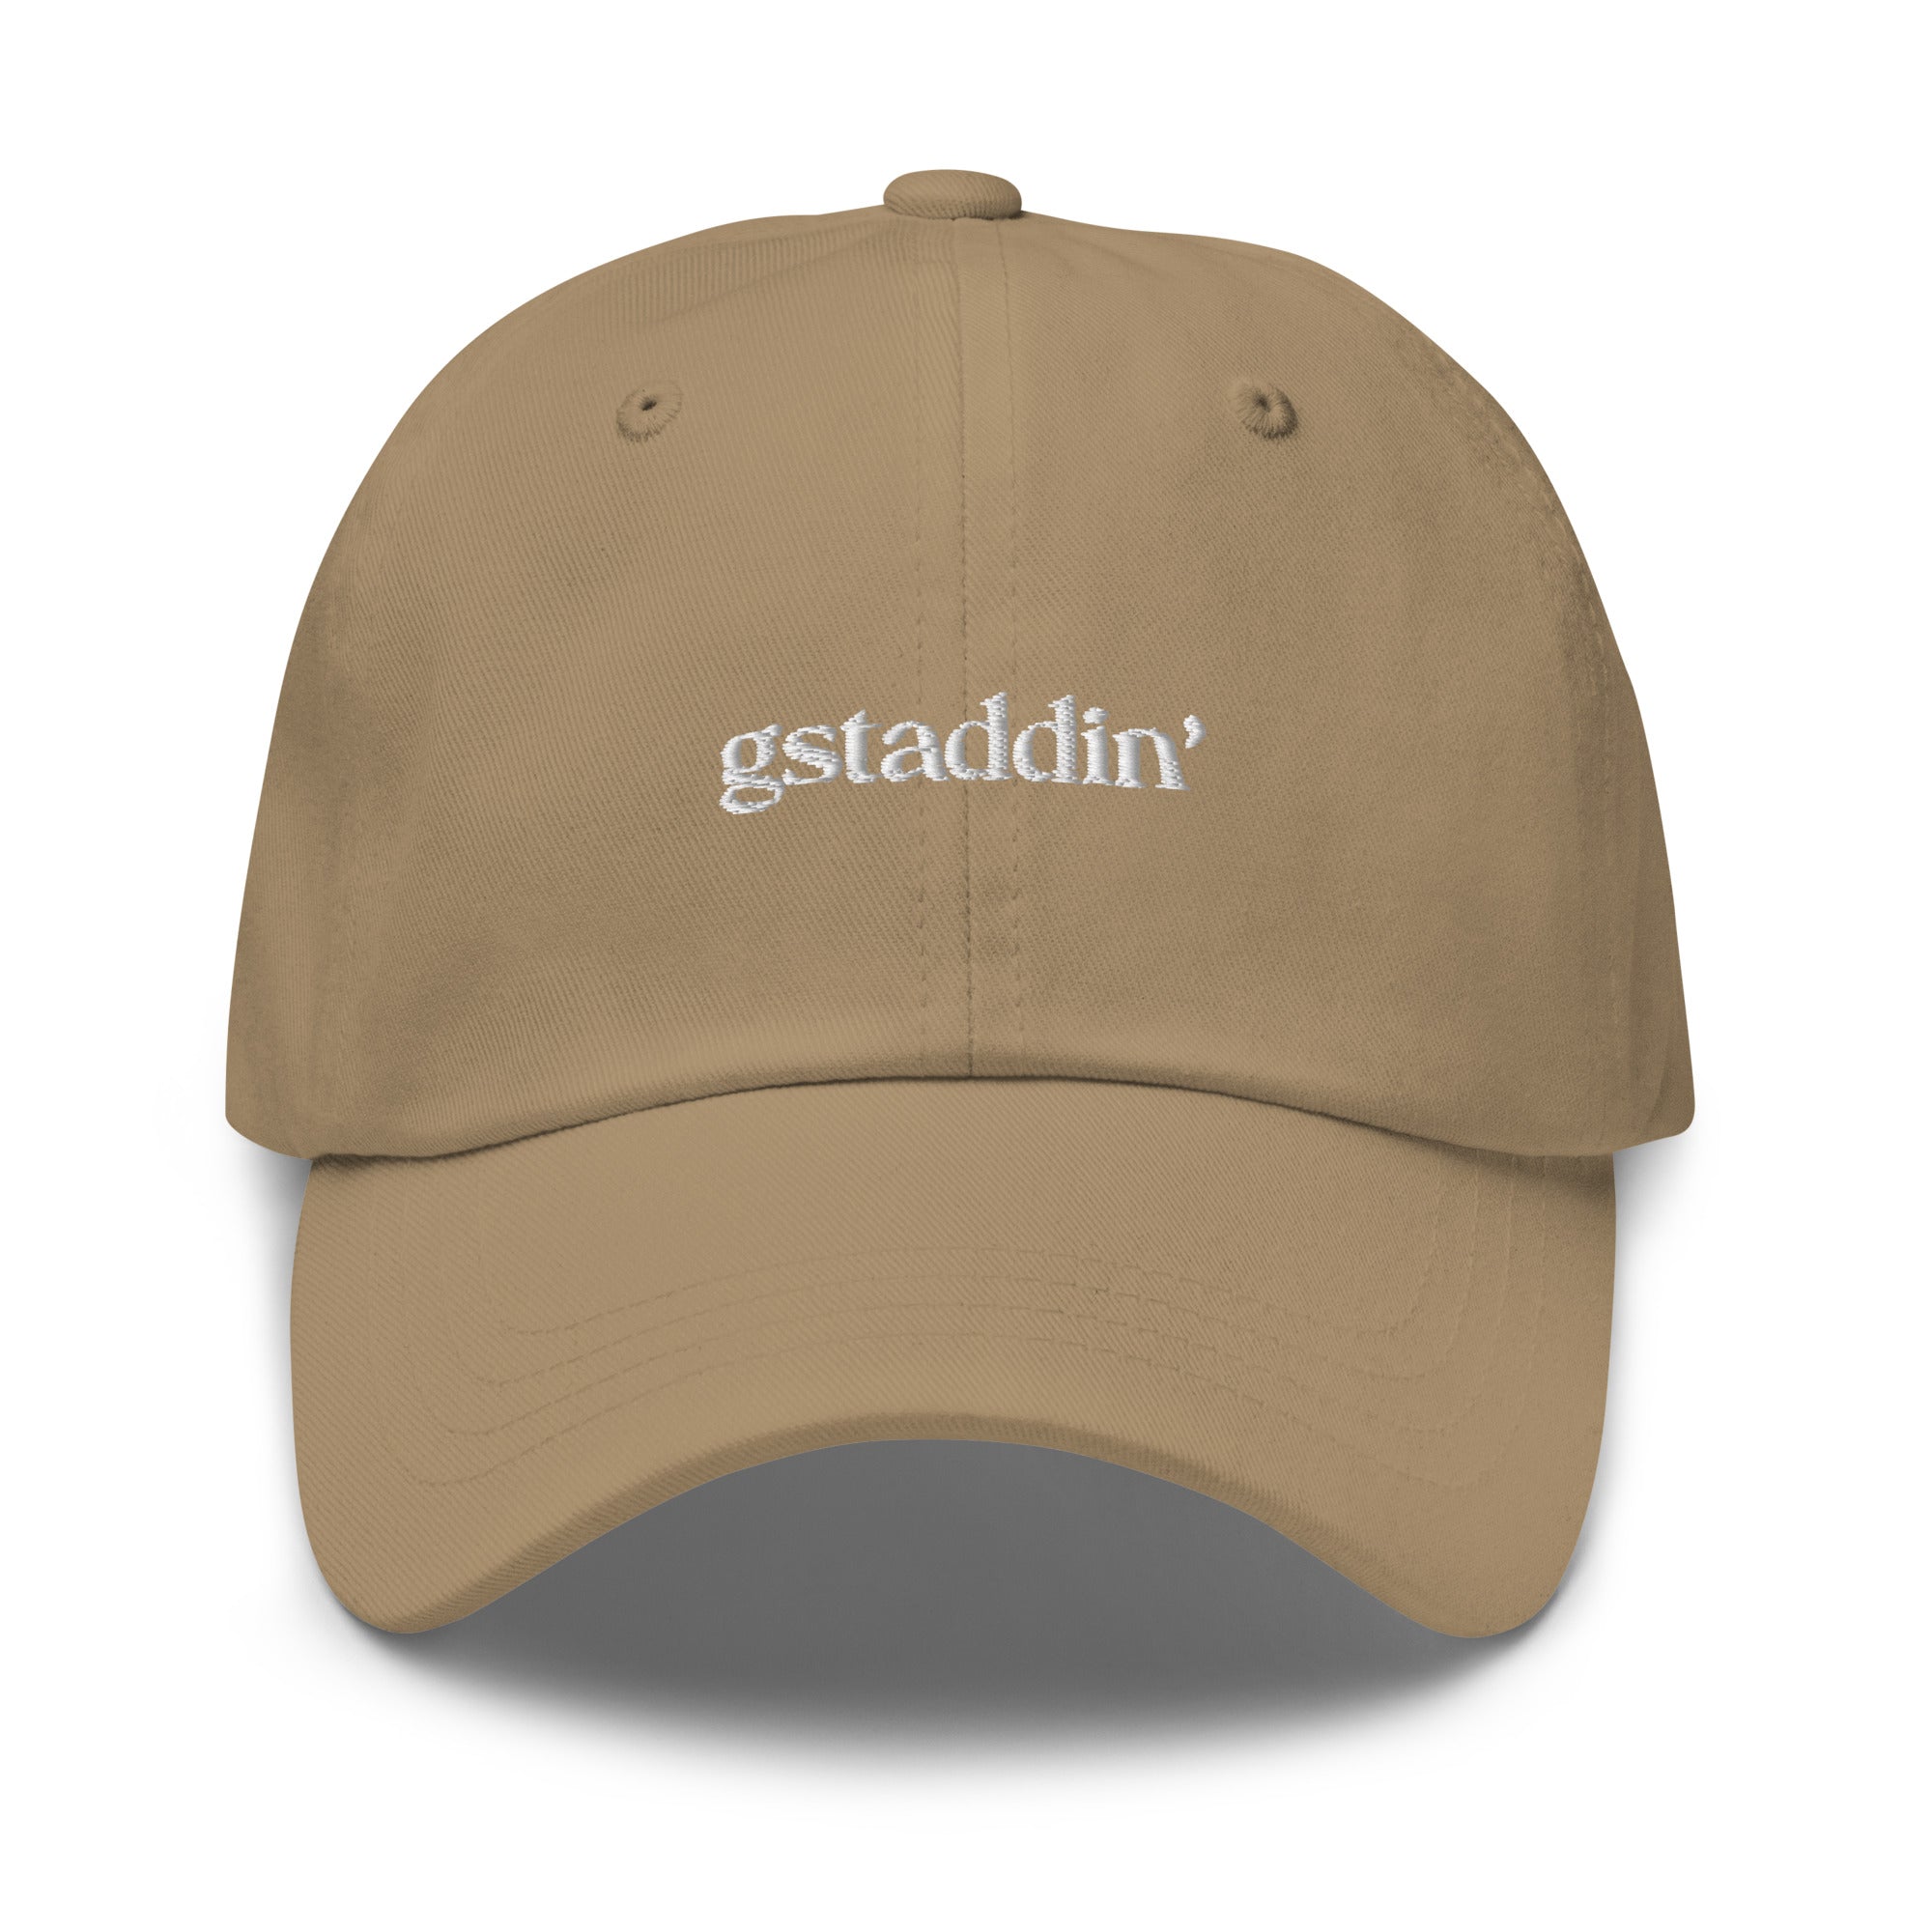 Gstaddin' - Dad hat